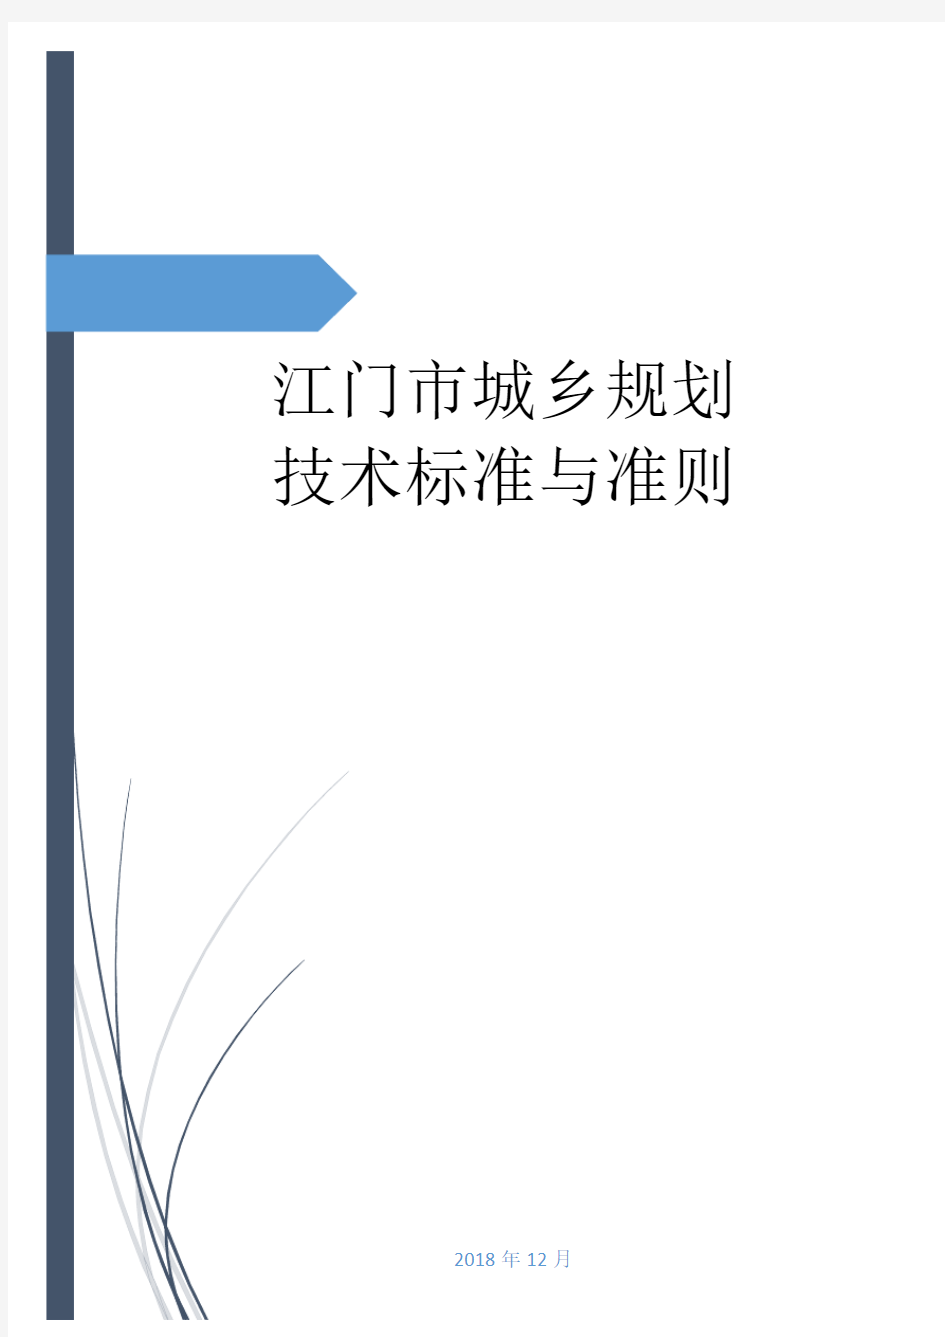 江门市城乡规划技术标准与准则-Jiangmen